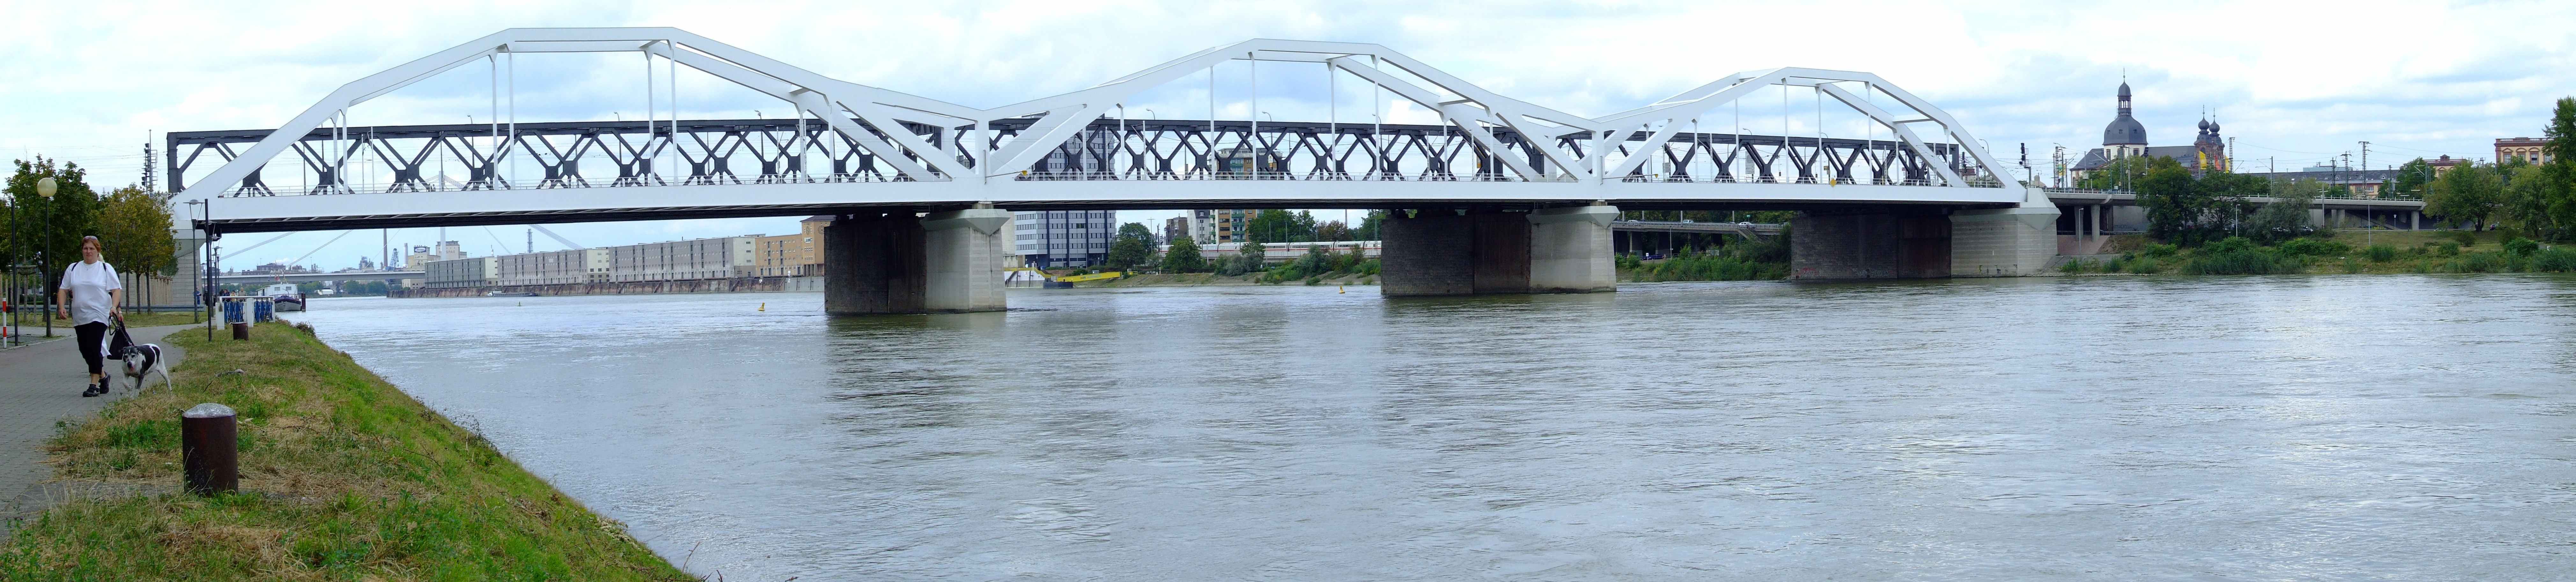 Unter der Rheinbrücke hindurch von Ludwigshafen aus ein Blick auf den Stromhafen in Mannheim mit den großen Lagerhallen.